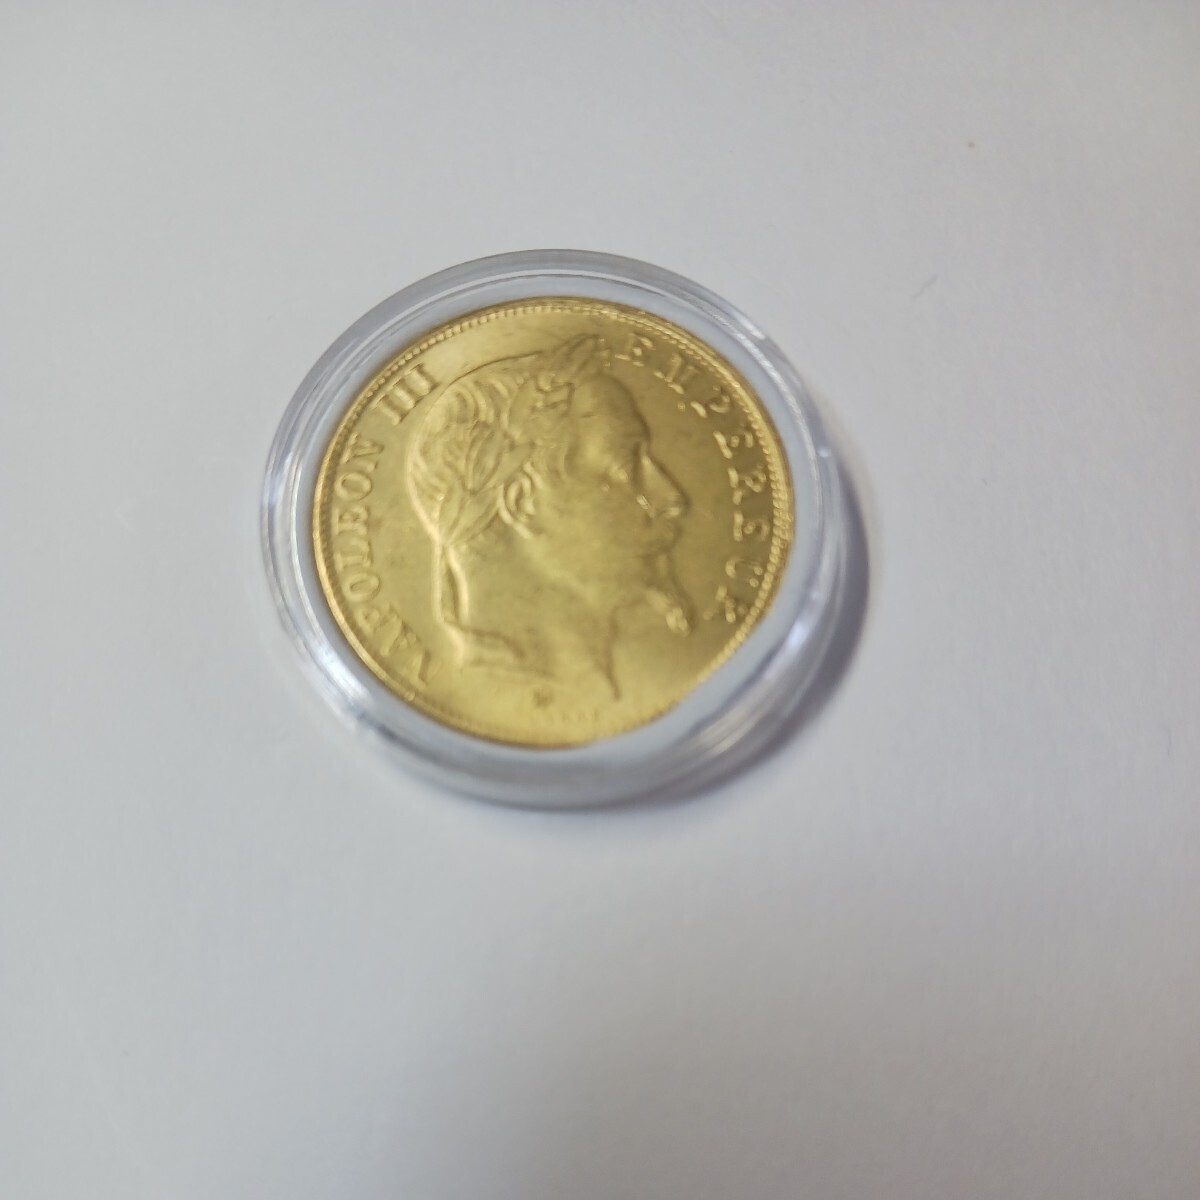 フランス 硬貨 古銭 ナポレオン三世 1859年 レジオンドヌール勲章 月桂樹 鷲 盾 コイン 直径:約27mm 重量:約11.5g